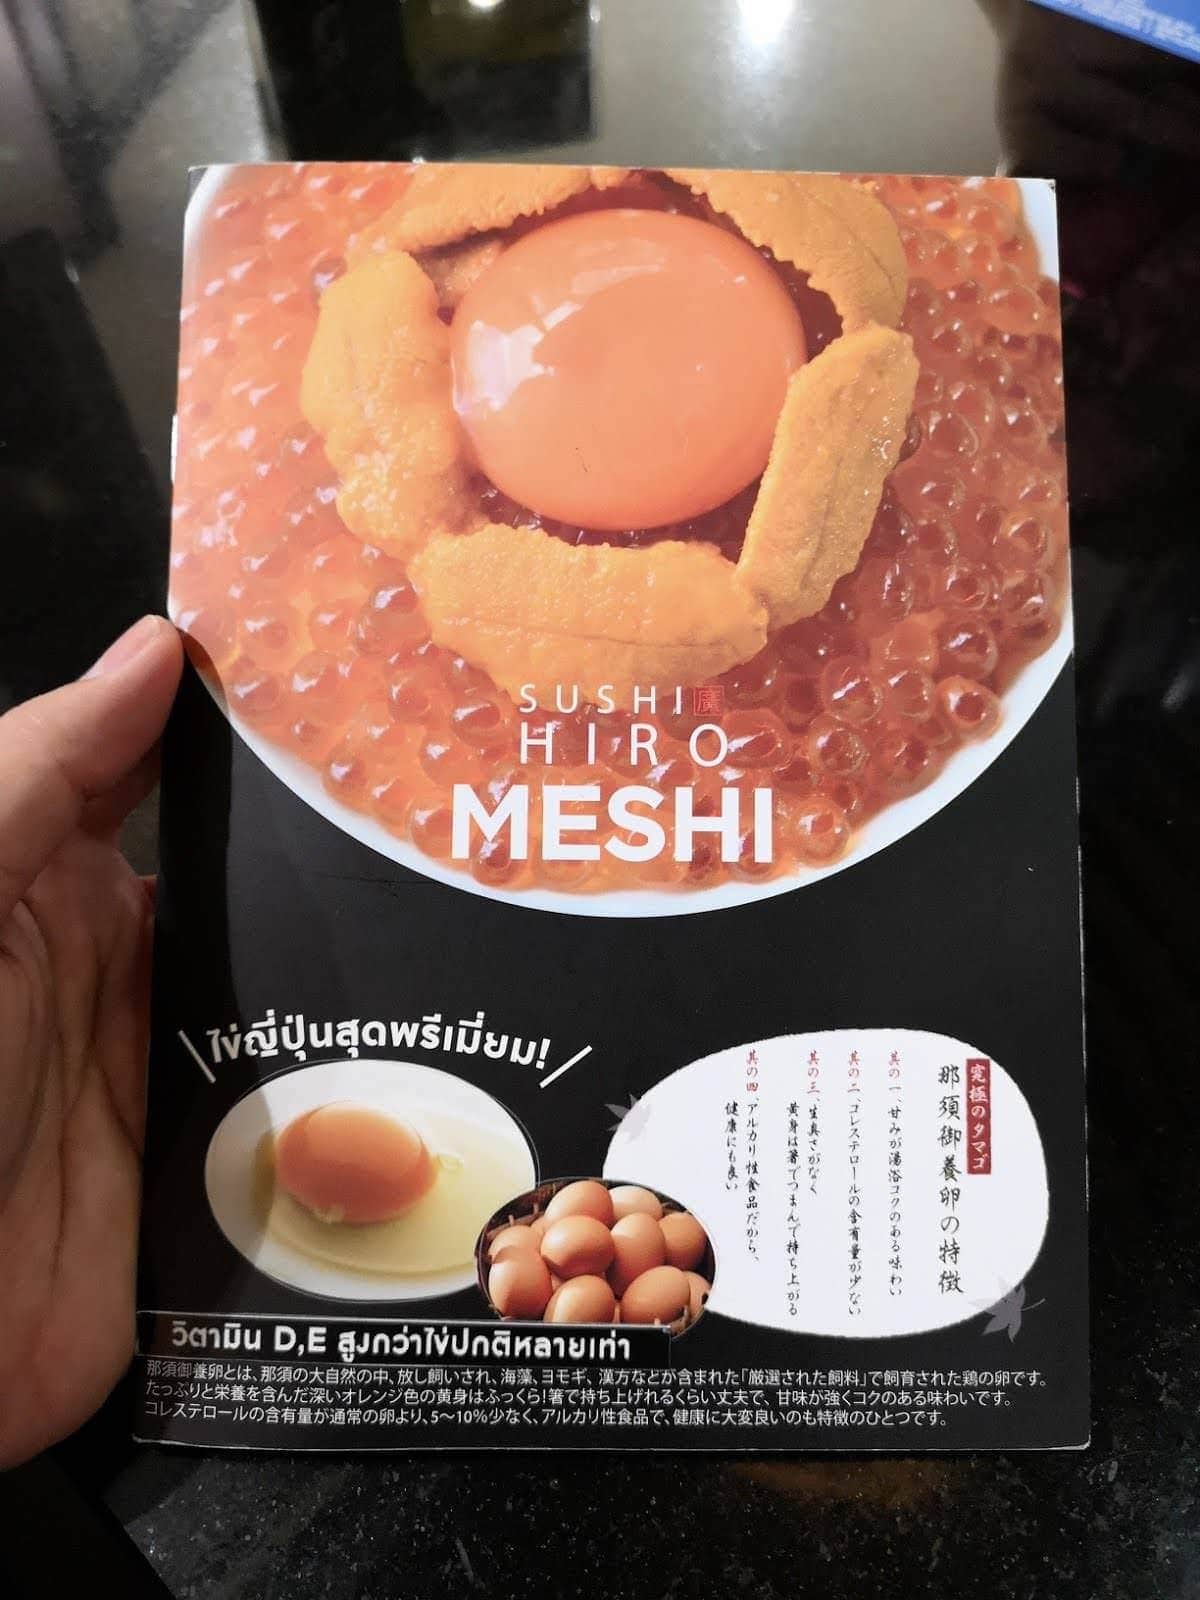 รีวิว Sushi Hiro MESHI เมนูใหม่กับสารพัดข้าวหน้าล้นชามกับไข่ไก่ญี่ปุ่น 5